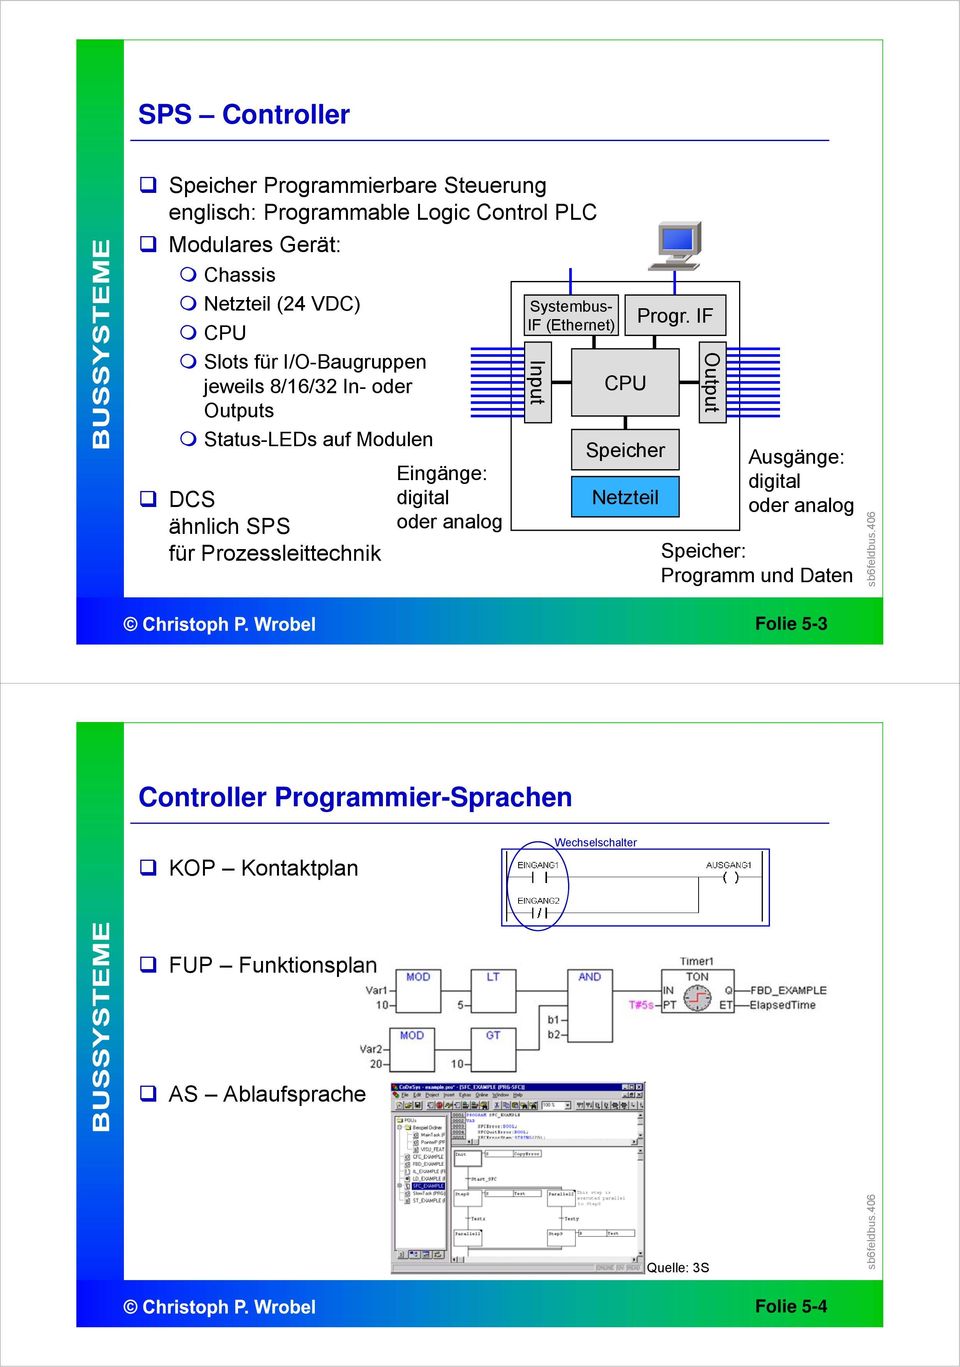 digital oder analog Systembus- IF (Ethernet) Input CPU Speicher Netzteil Progr.